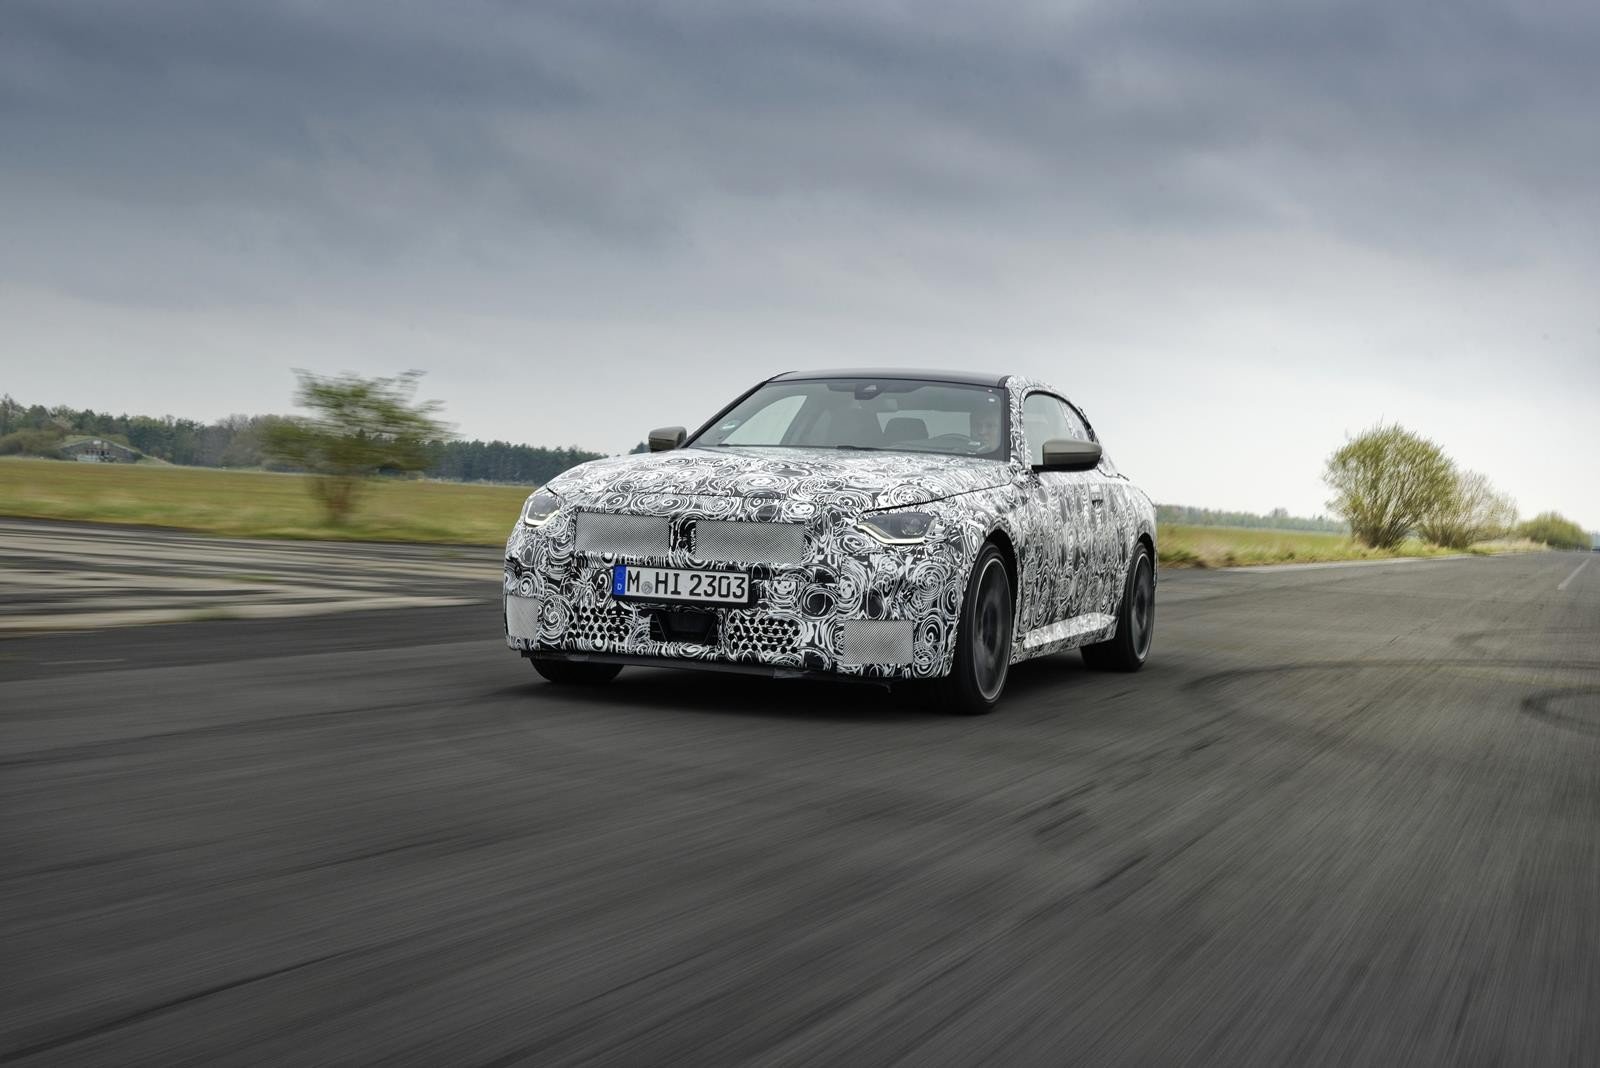 Zwiastun BMW Coupe Serii 2 nowej generacji, BMW Coupe Serii 2 nowej generacji, BMW Coupe Serii 2 2022